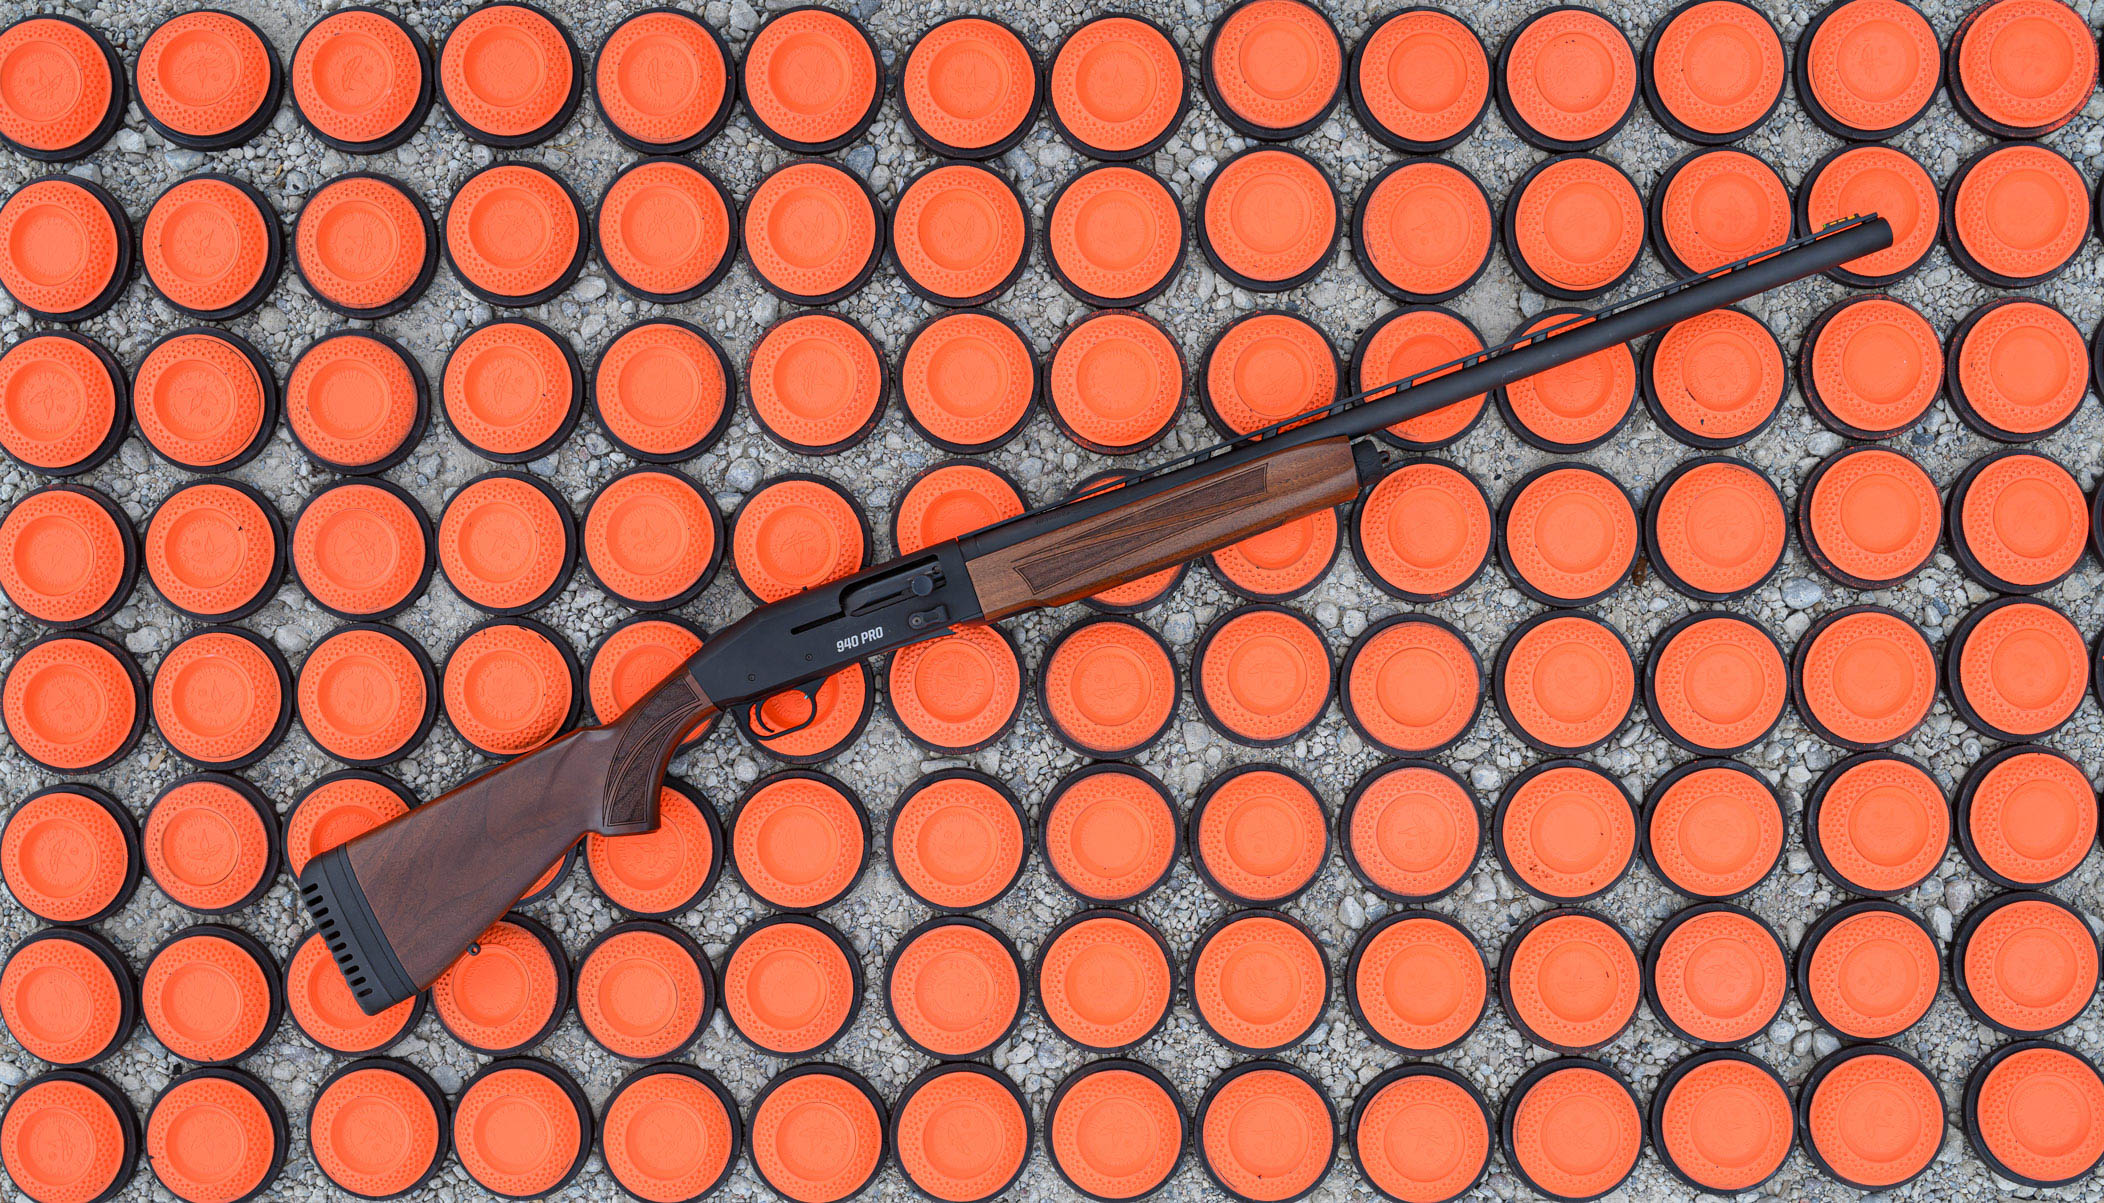 Mossberg 940 Pro shotgun.